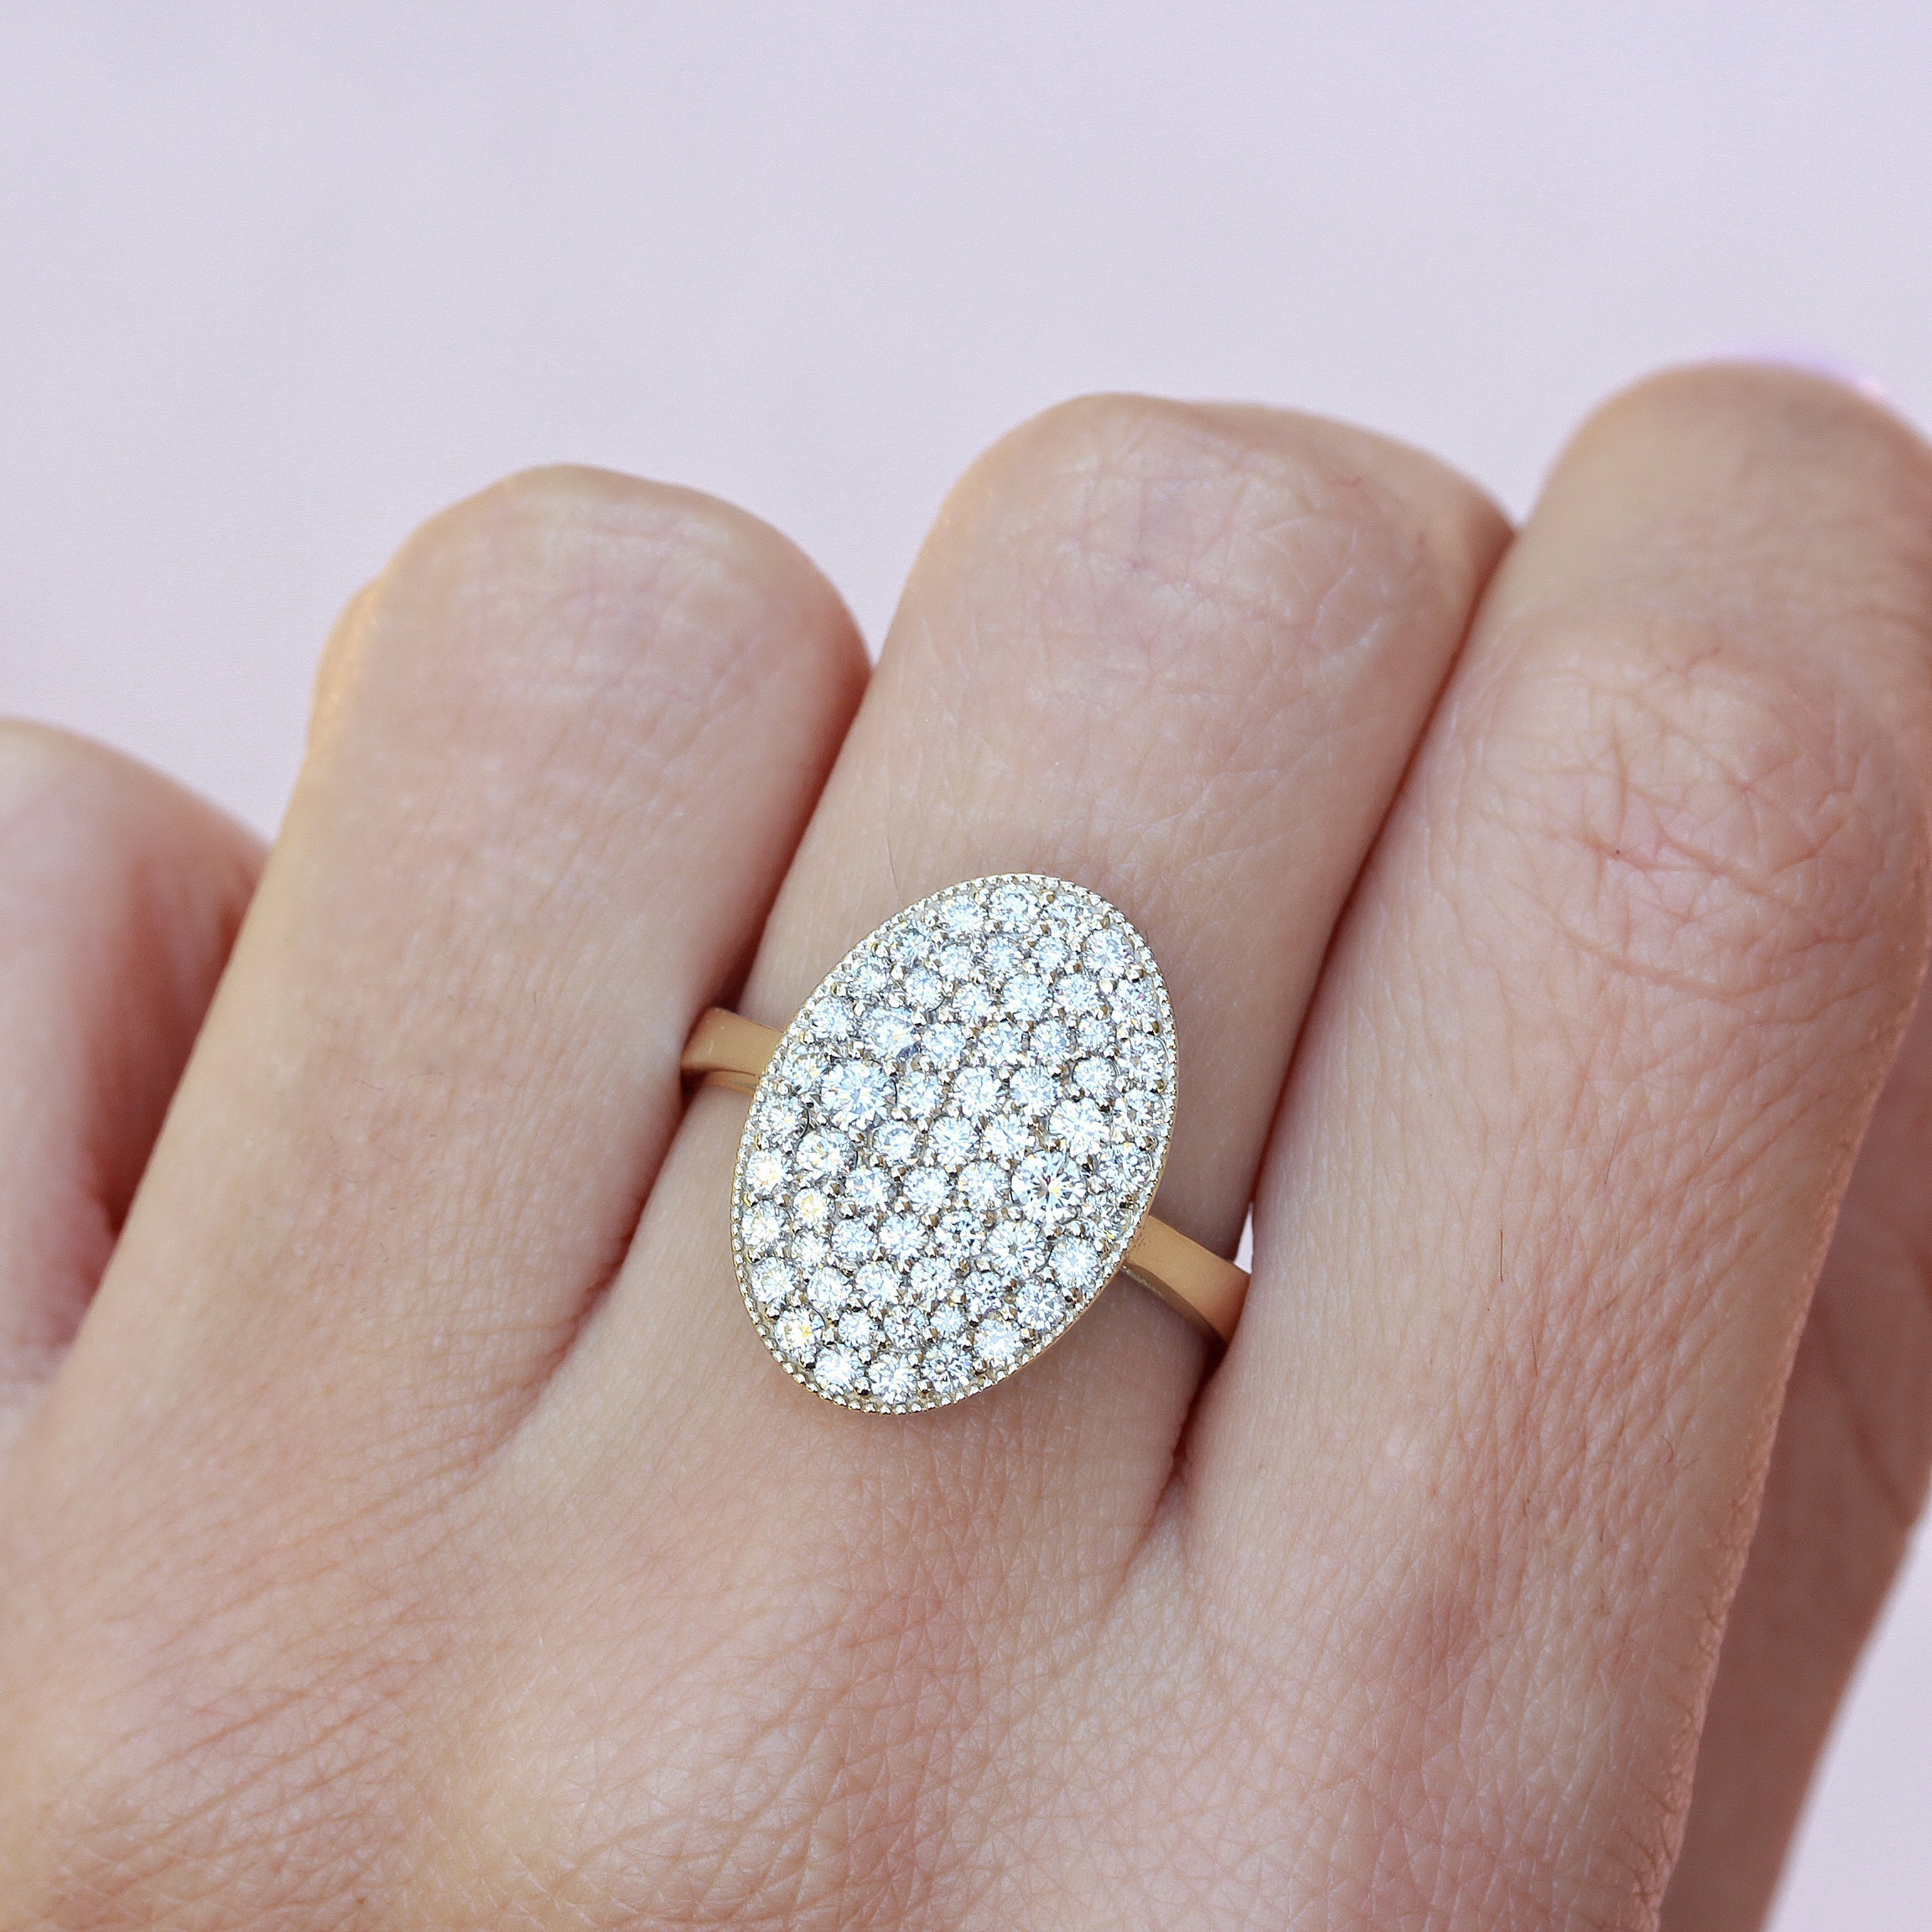 Big Estate ring Size 8 ,14k solid gold ring ,5 carat certified ring. | eBay